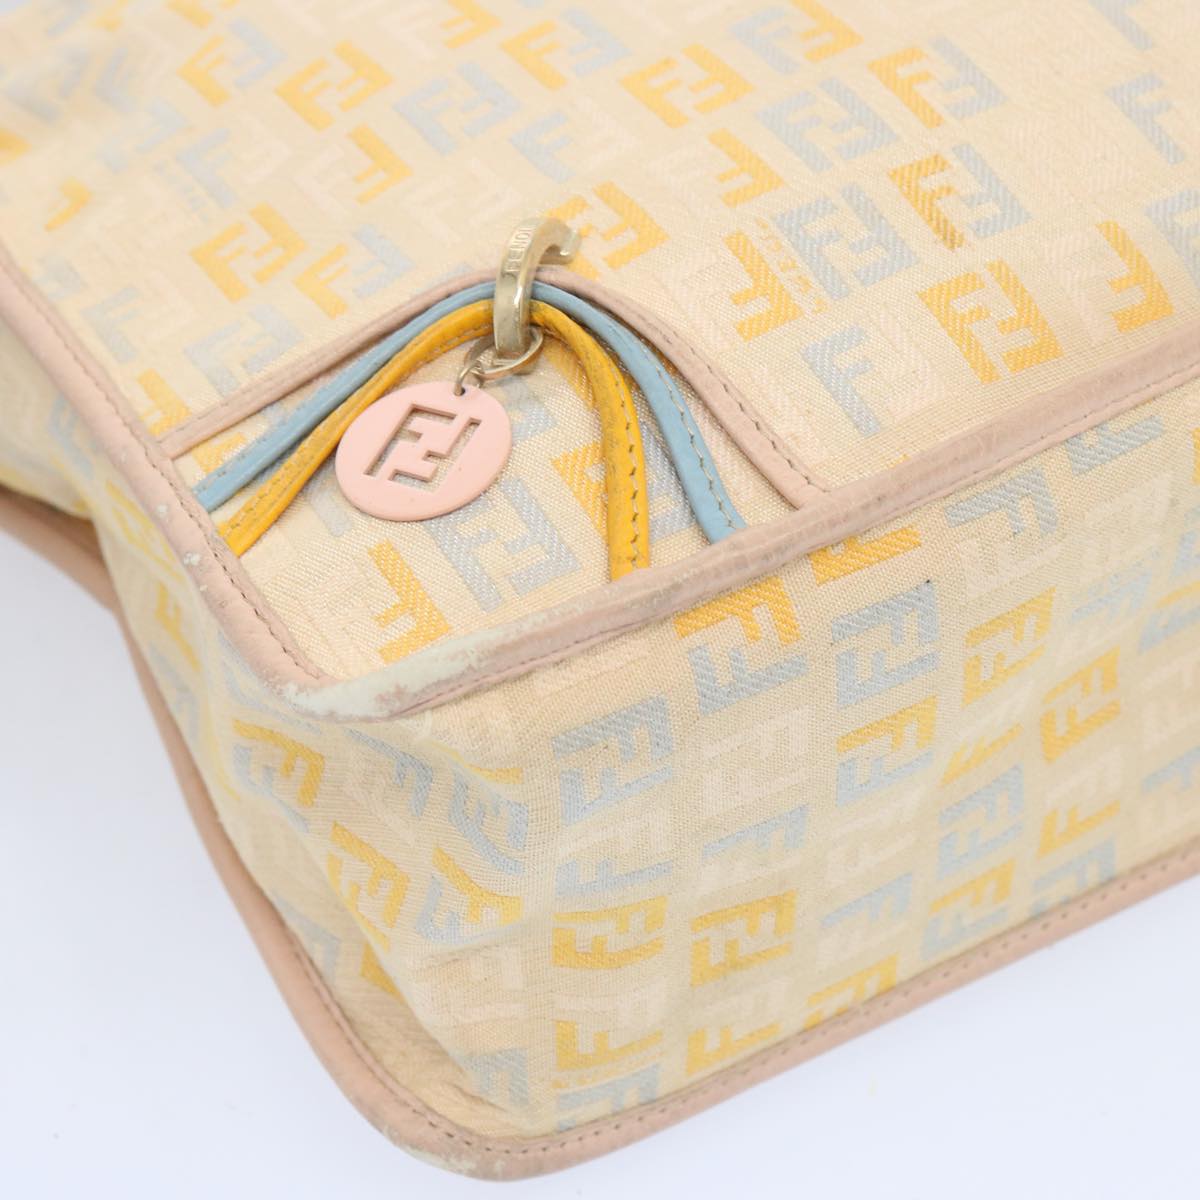 FENDI Zucchino Canvas Shoulder Bag Beige Light Blue yellow Auth 66310